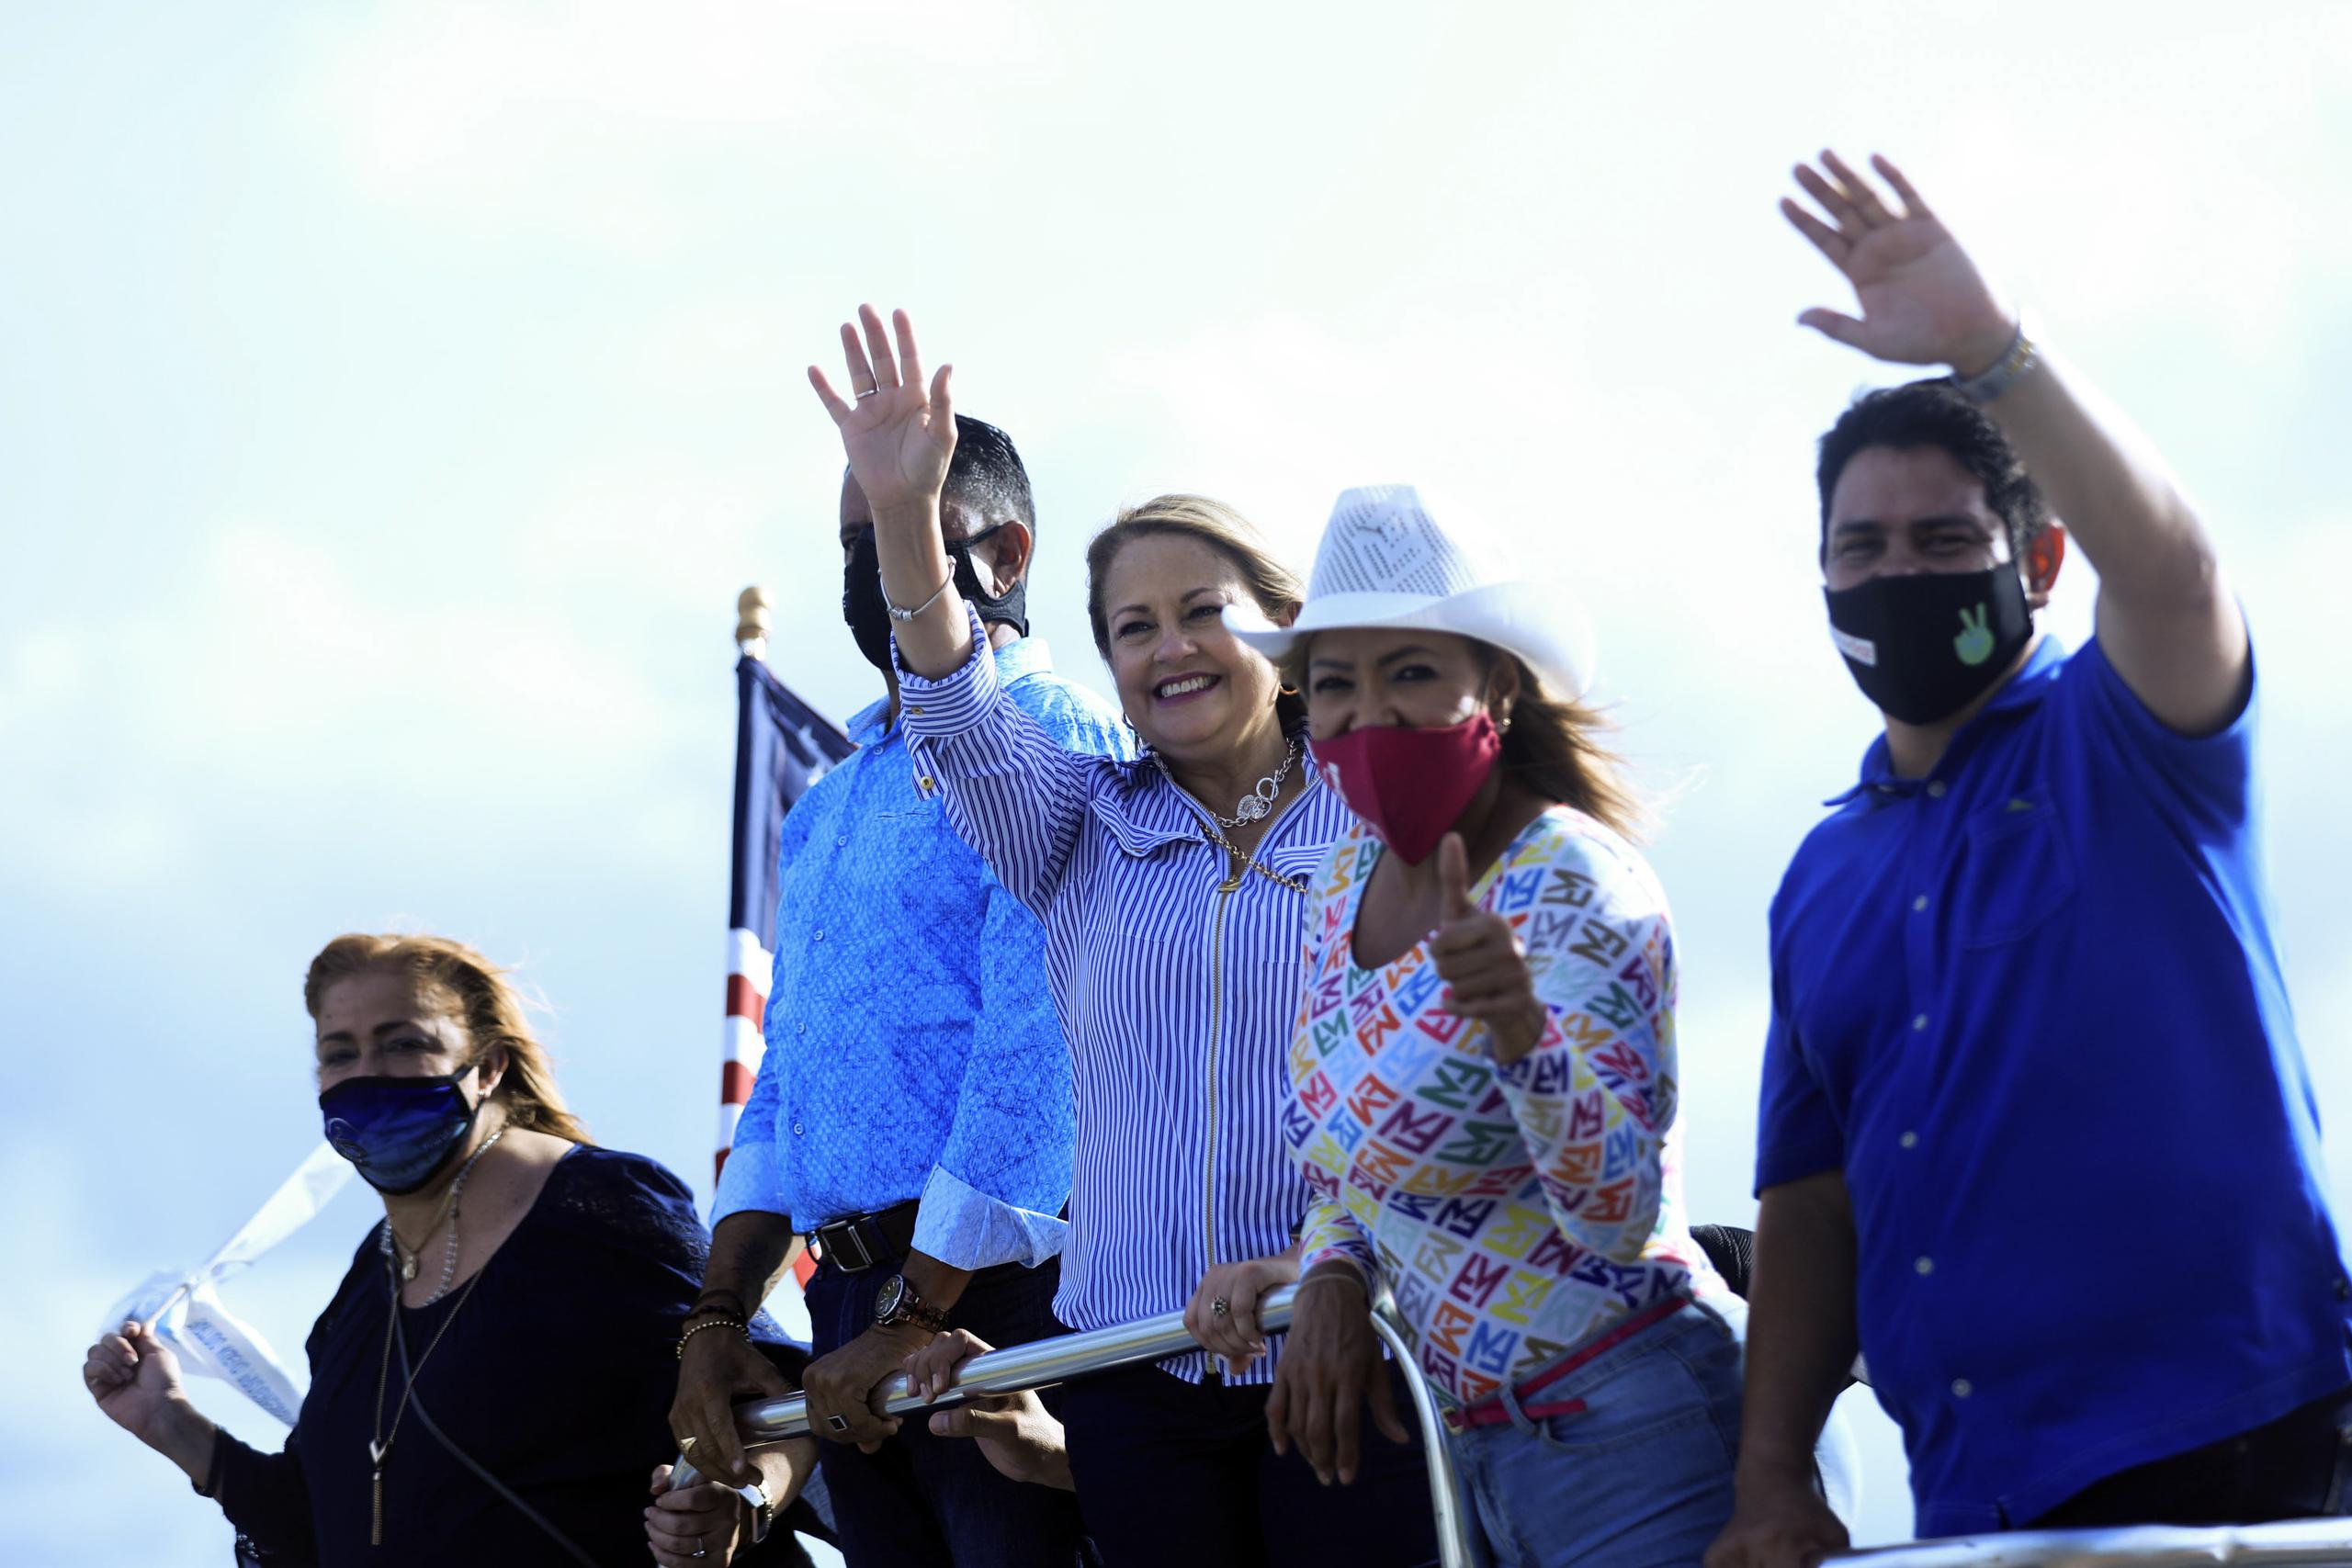 La gobernadora Wanda Vázquez, sin mascarilla, durante una caravana reciente en Guaynabo.